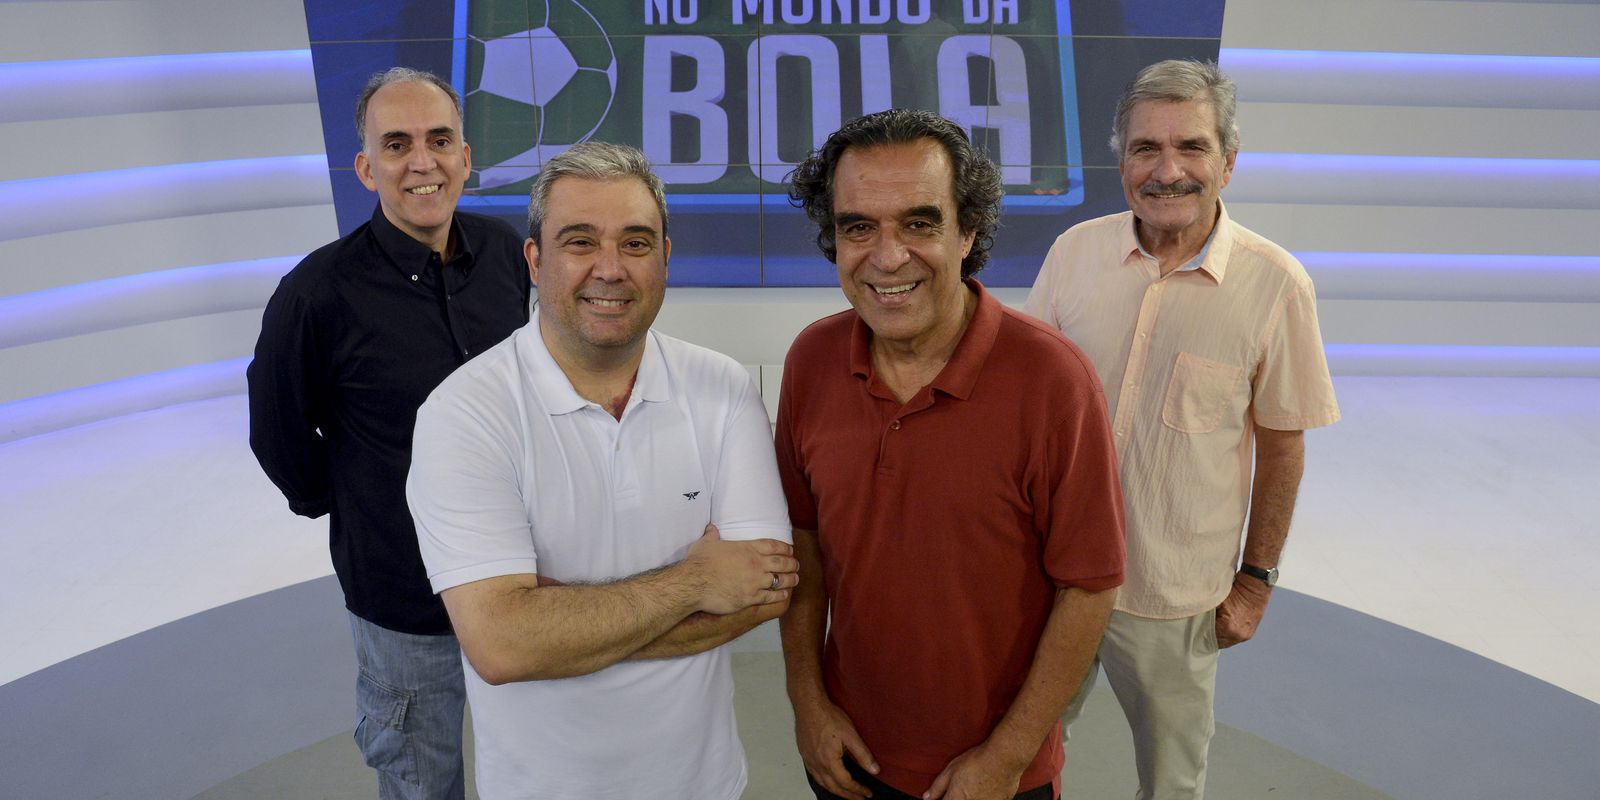 Programa No Mundo da Bola na TV Brasil faz 10 anos com edição especial